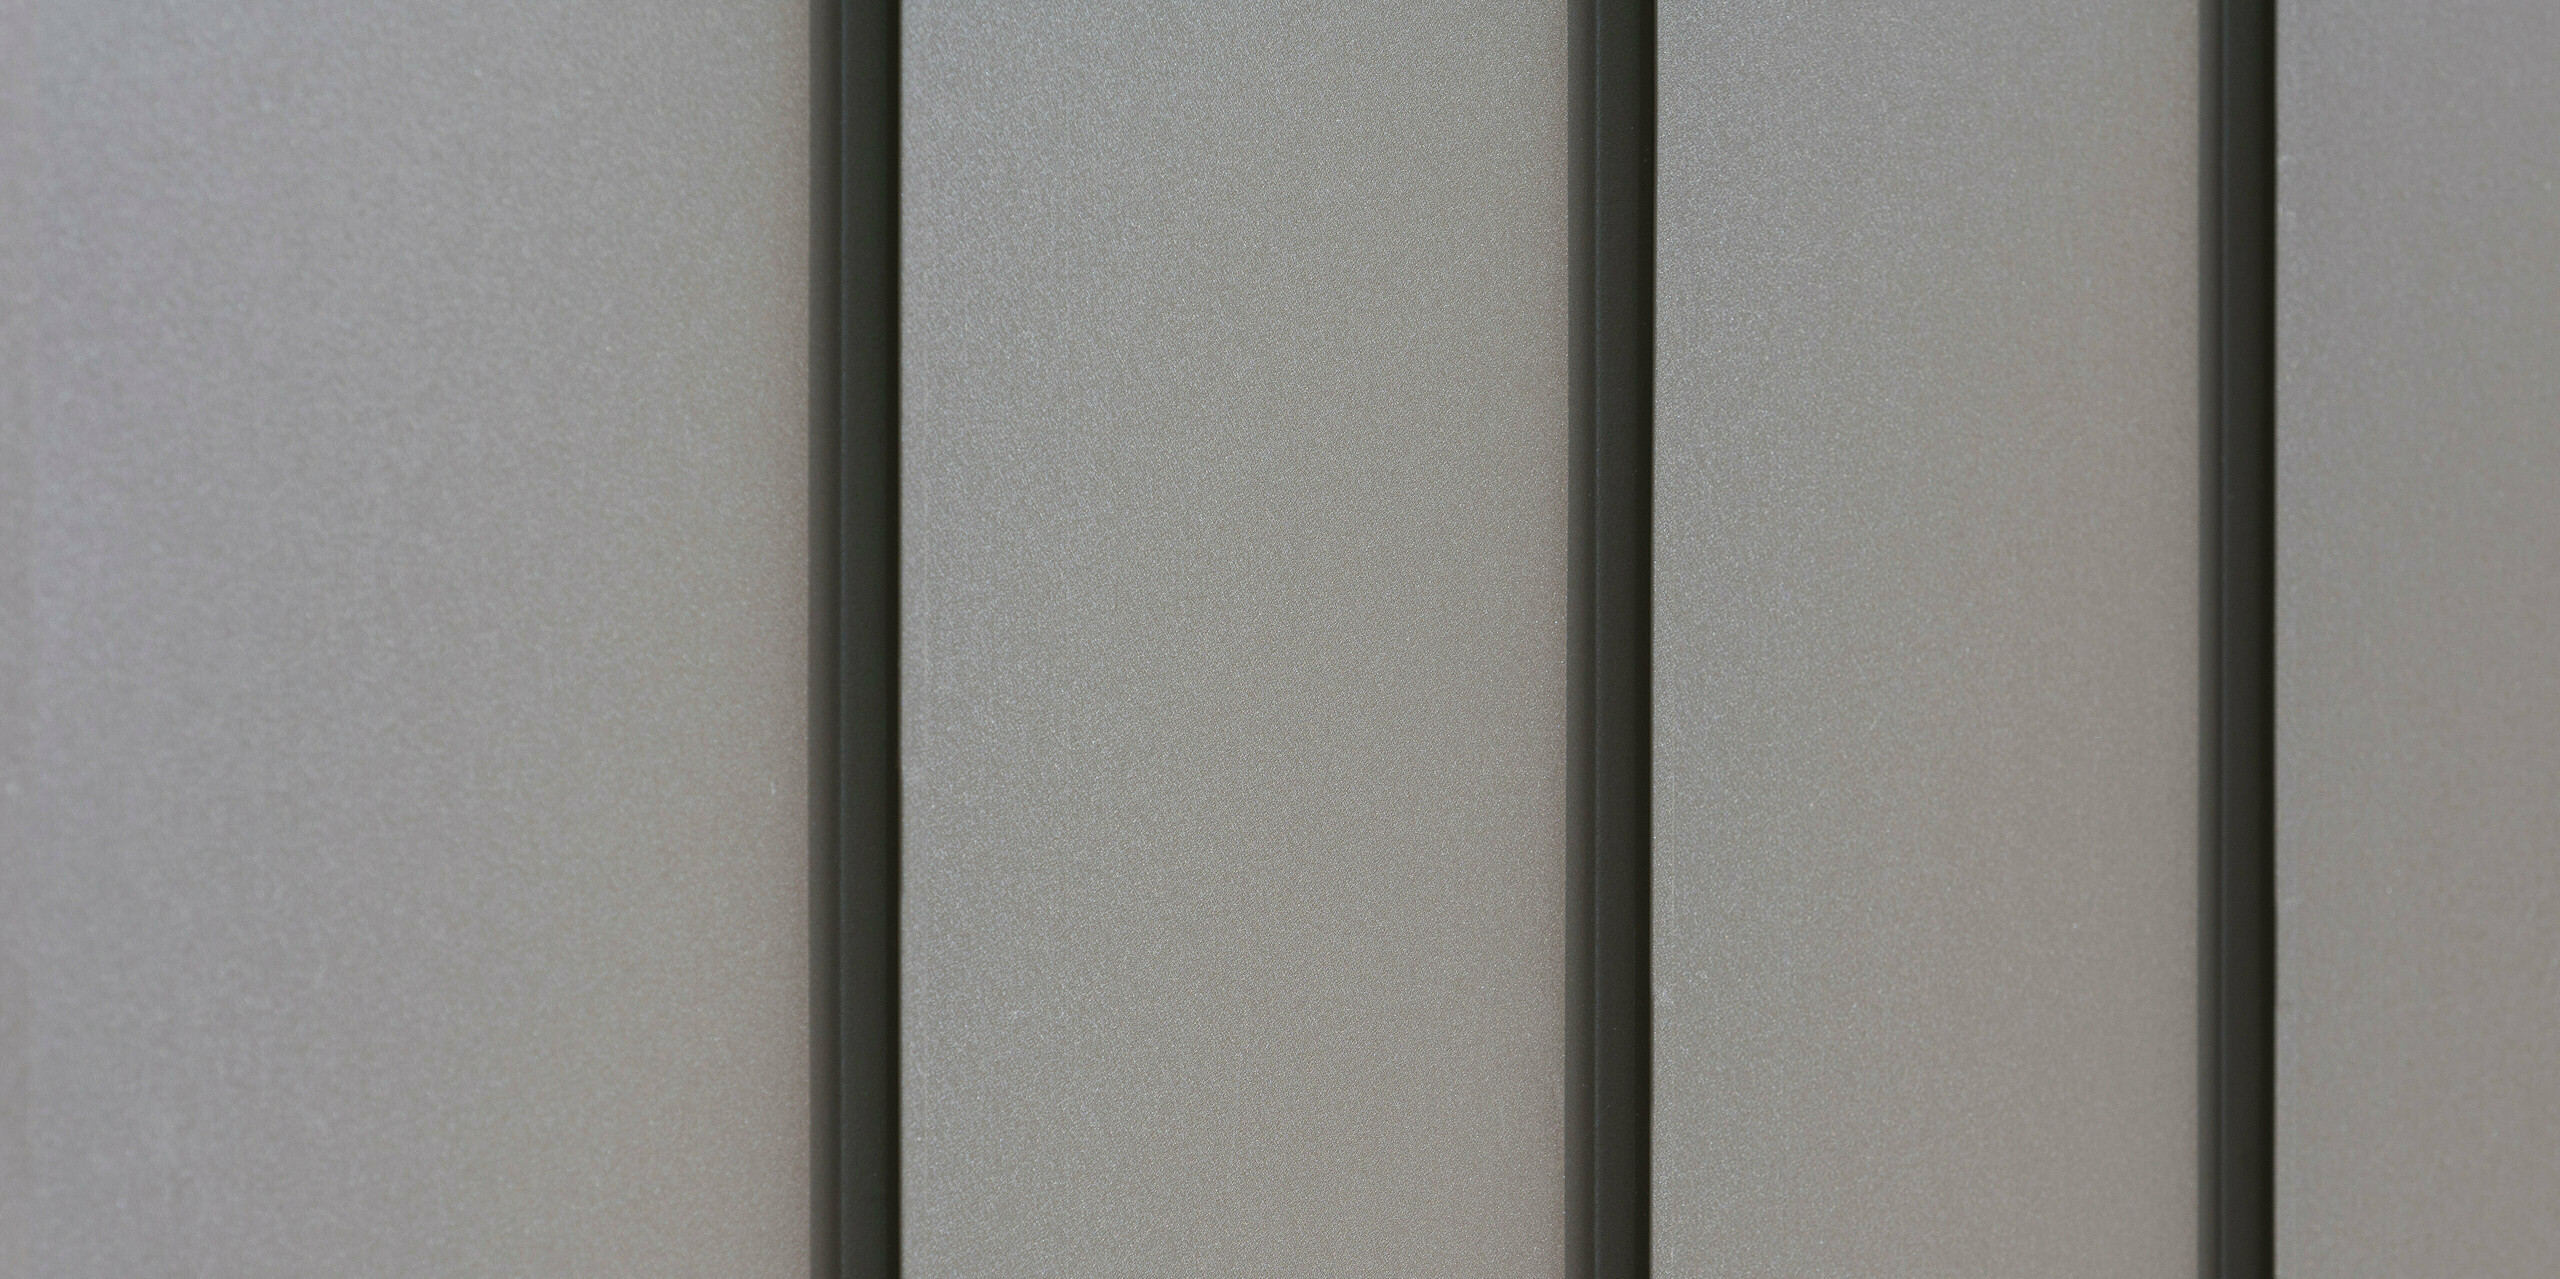 Nahaufnahme einer modernen Fassadenverkleidung aus Aluminium mit vertikalen Scharen, die für ein ästhetisch strukturiertes Muster sorgen. Das Aluminium kommt von der PREFA Aluminiumprodukte GmbH.